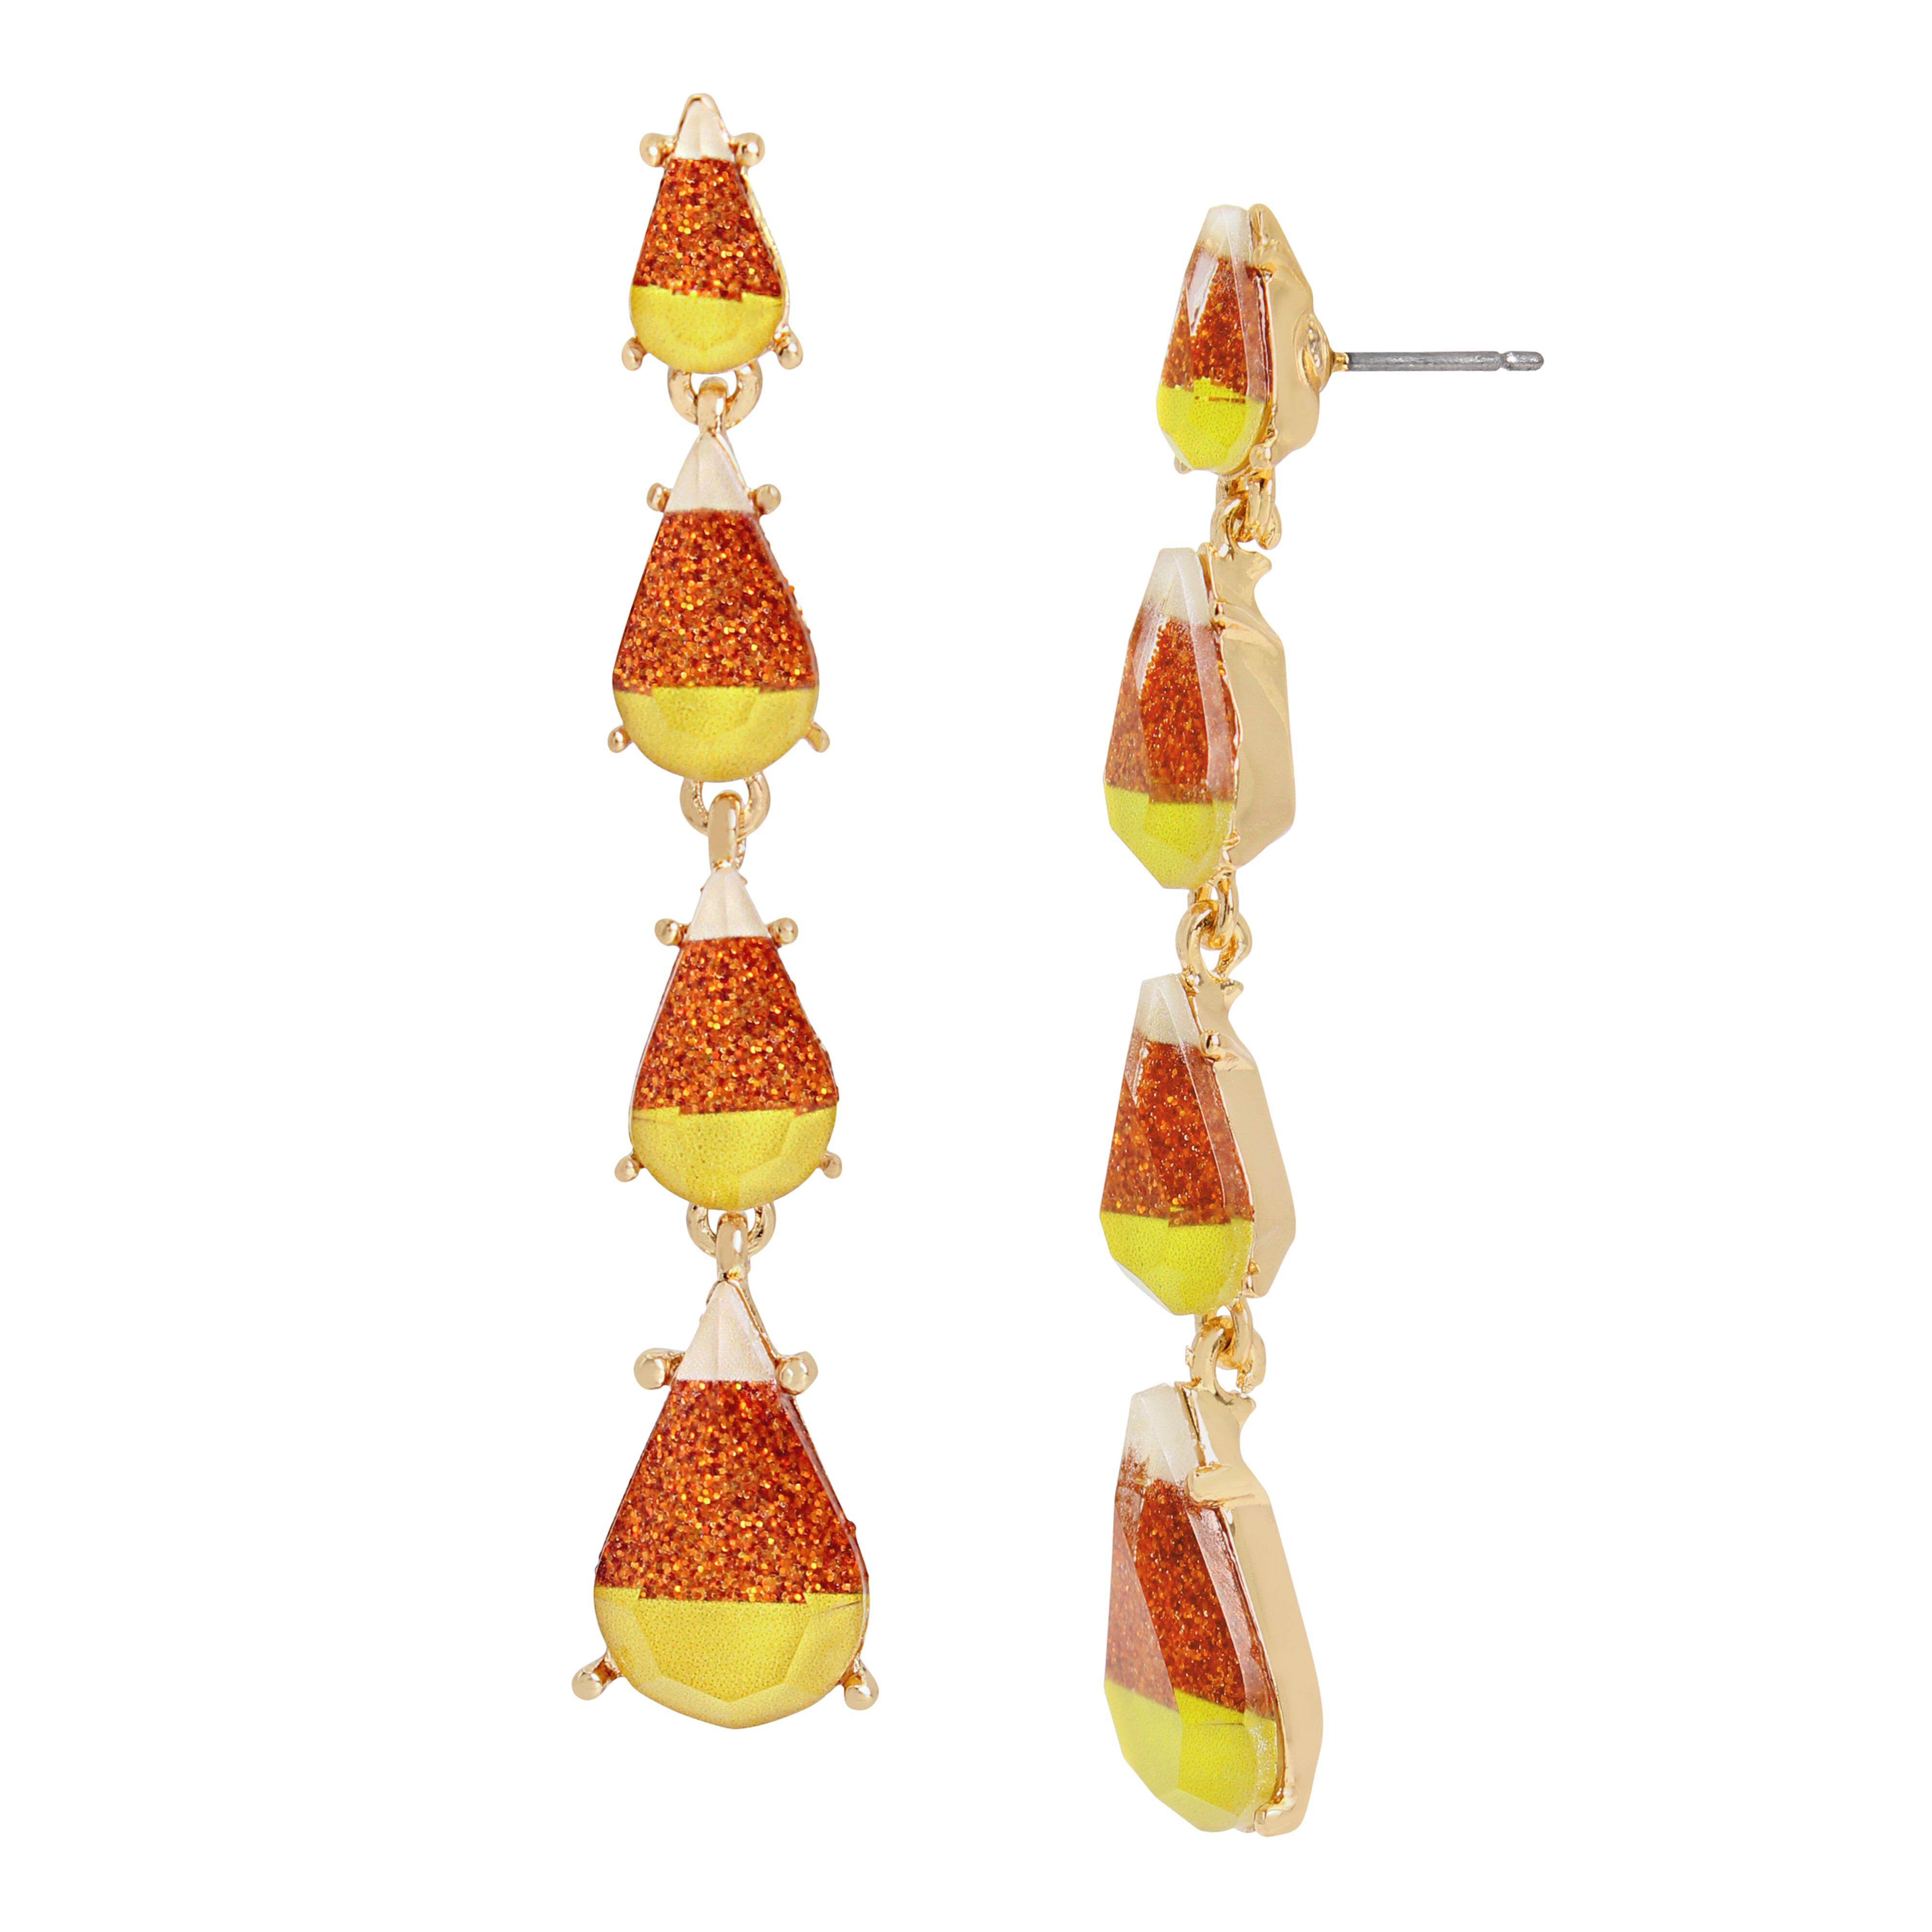 Bijuterii Femei Betsey Johnson Candy Corn Linear Earrings OrangeGold